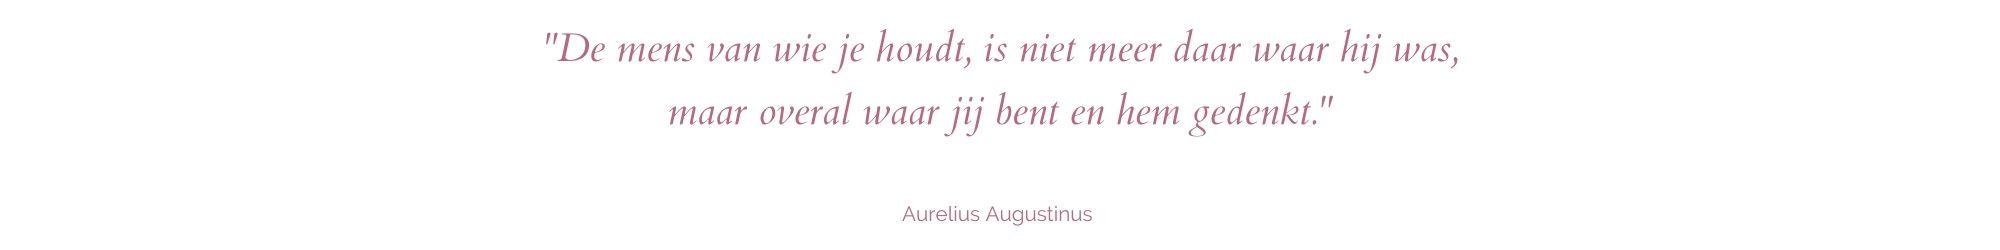 Quote van Augustinus over gedenken